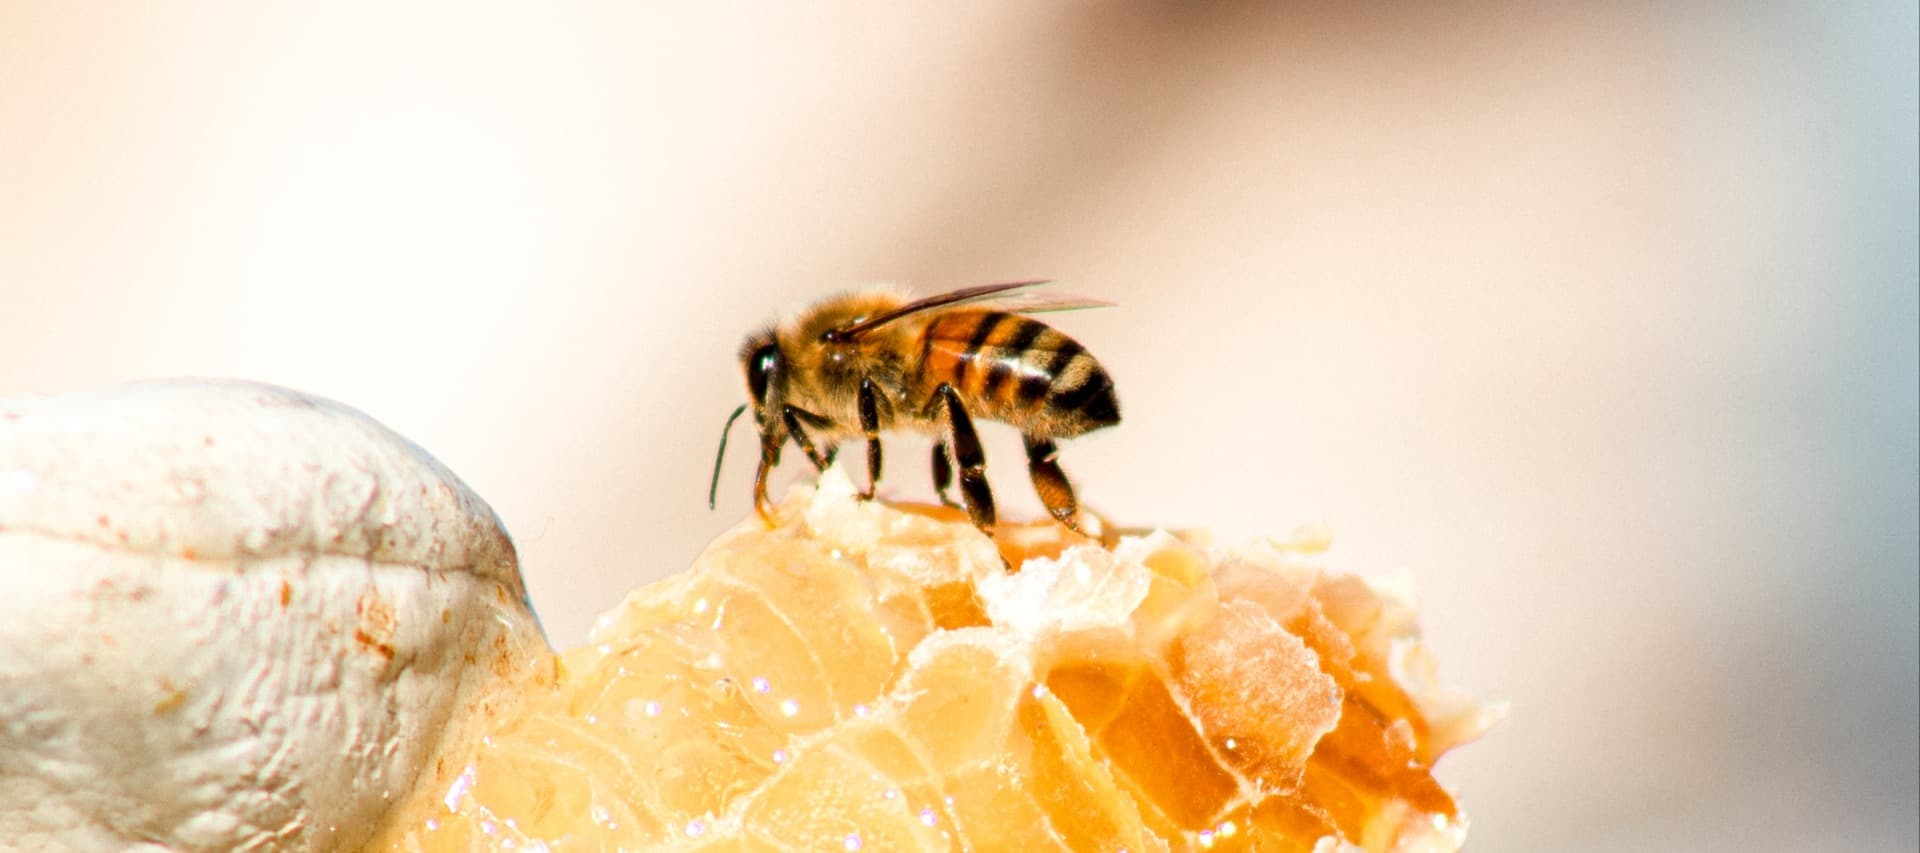 Фото новости: "Федеральный научный центр пчеловодства подтвердил снижение производства меда"